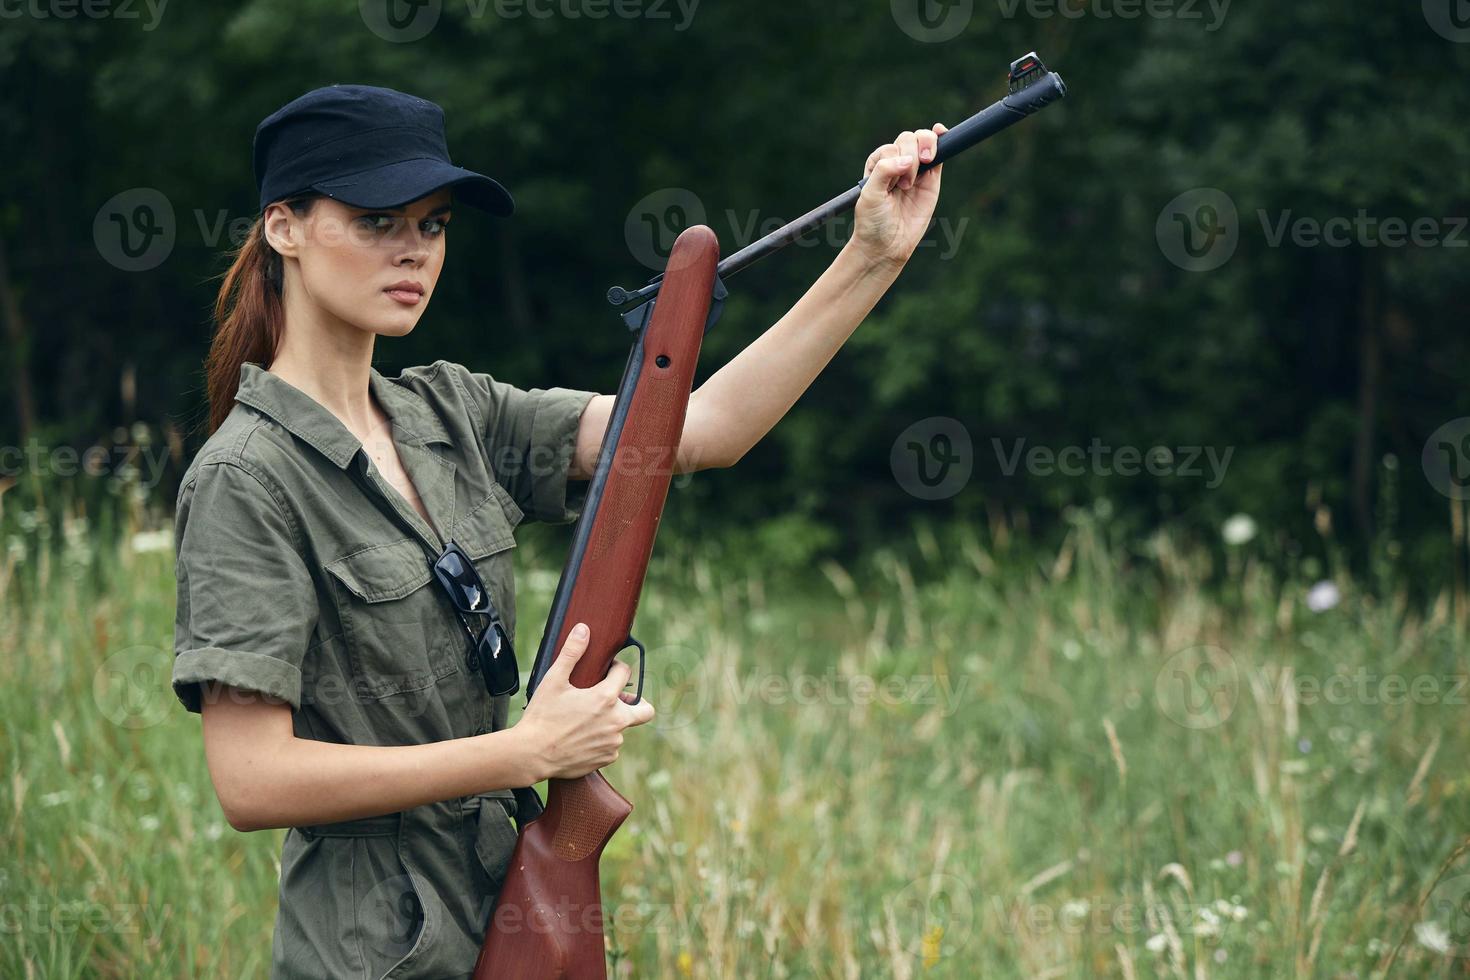 donna soldato nel verde tuta da lavoro ricaricare pistole natura fresco aria Armi foto